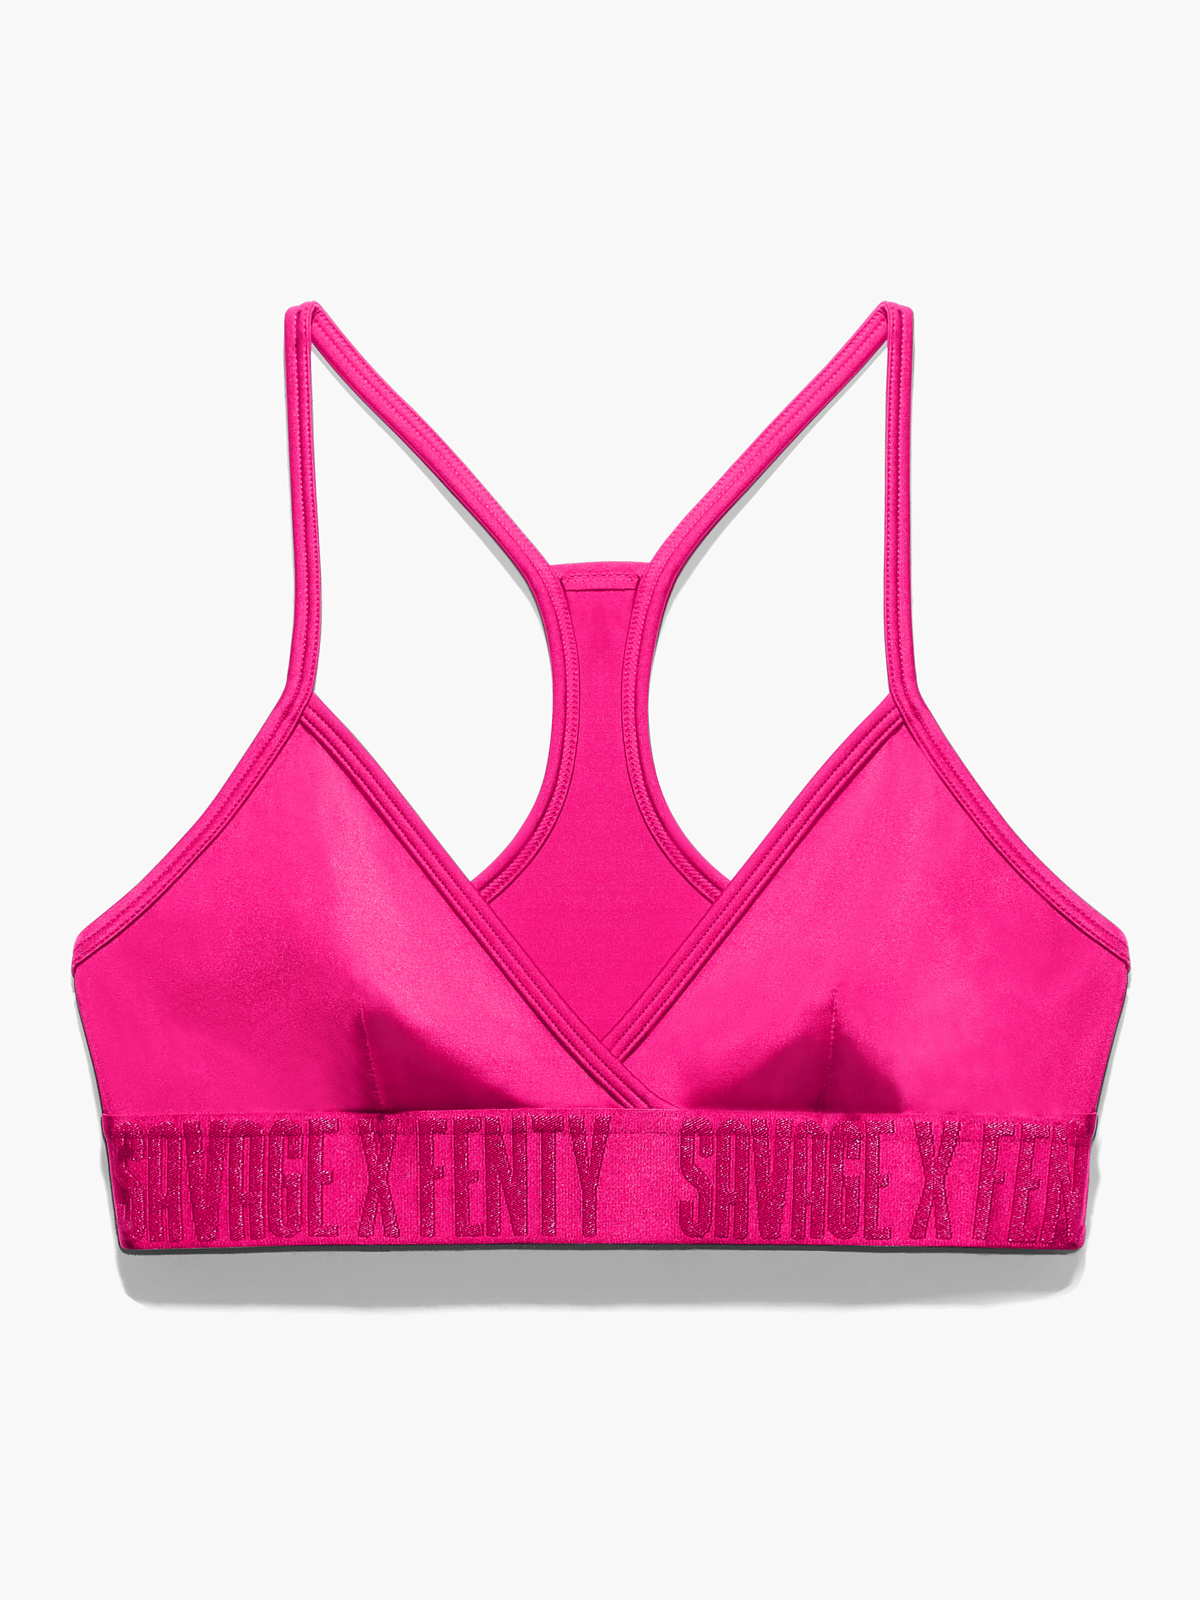 Savage x Fenty Pale Pink Lounge Bralette, Women's Fashion